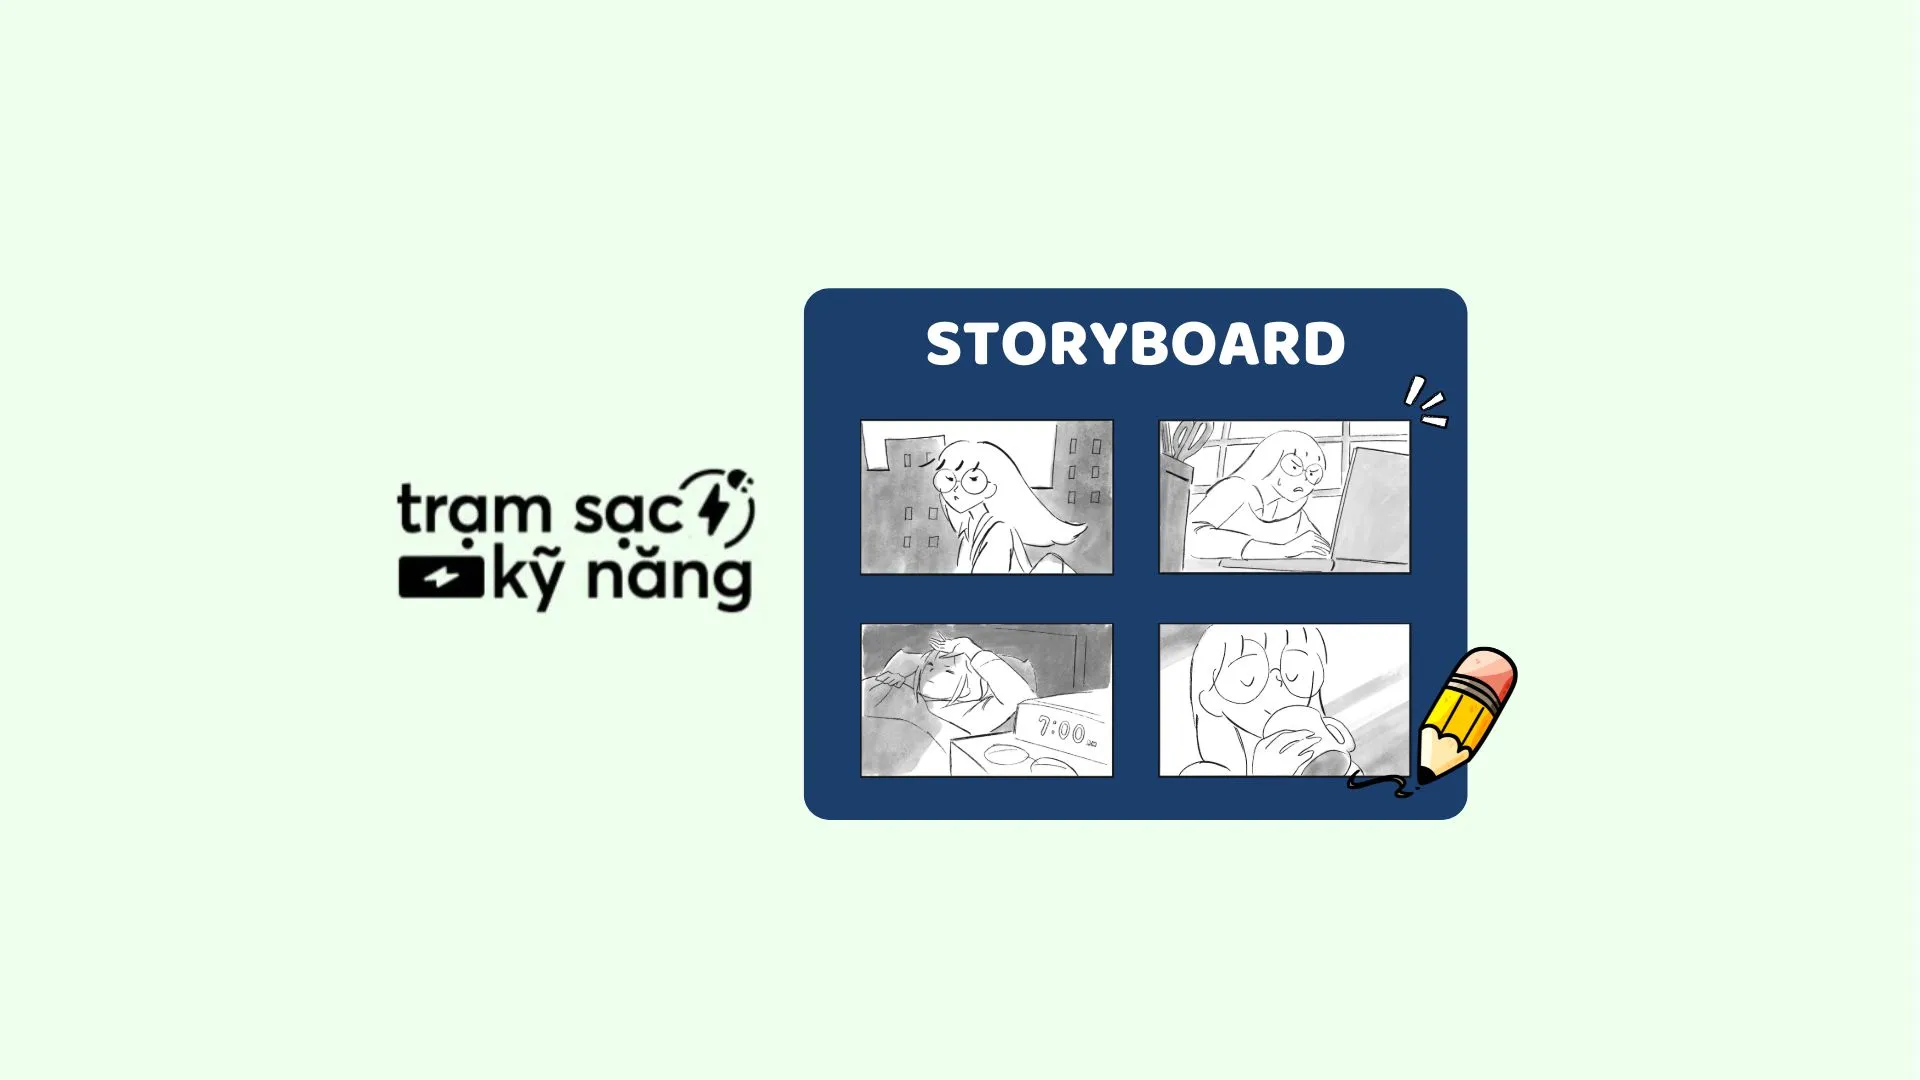 storyboard là gì